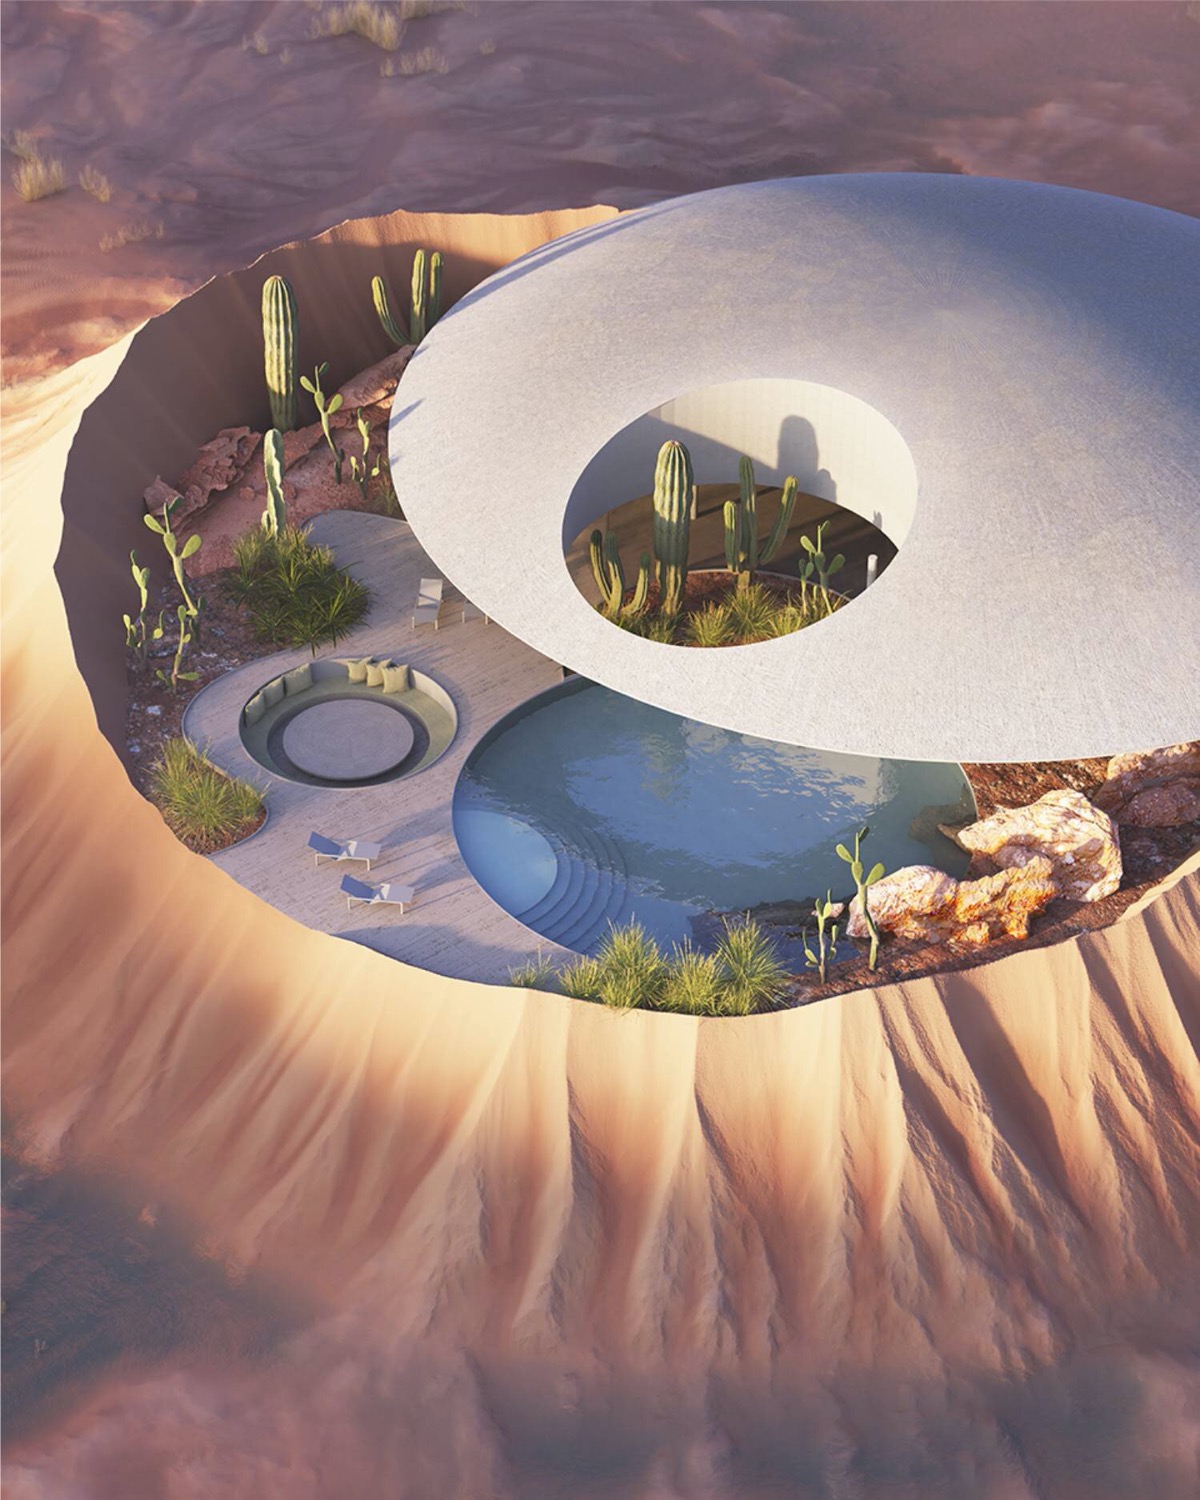 hình ảnh ngôi nhà như nằm bên trong một miệng núi lửa khổng lồ trên sa mạc